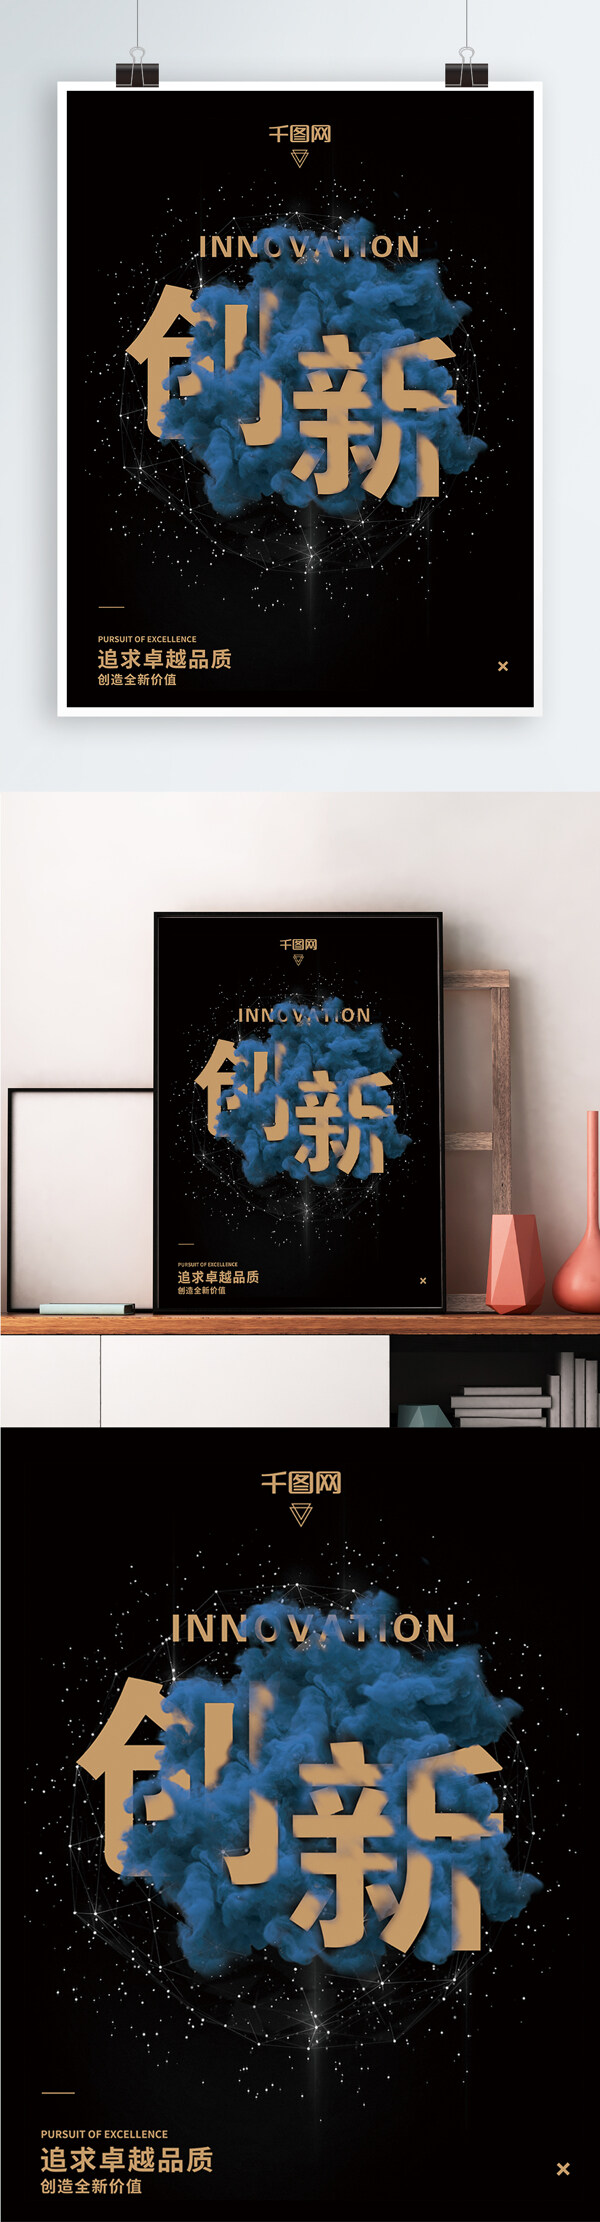 炫酷科技企业文化创新正能量海报